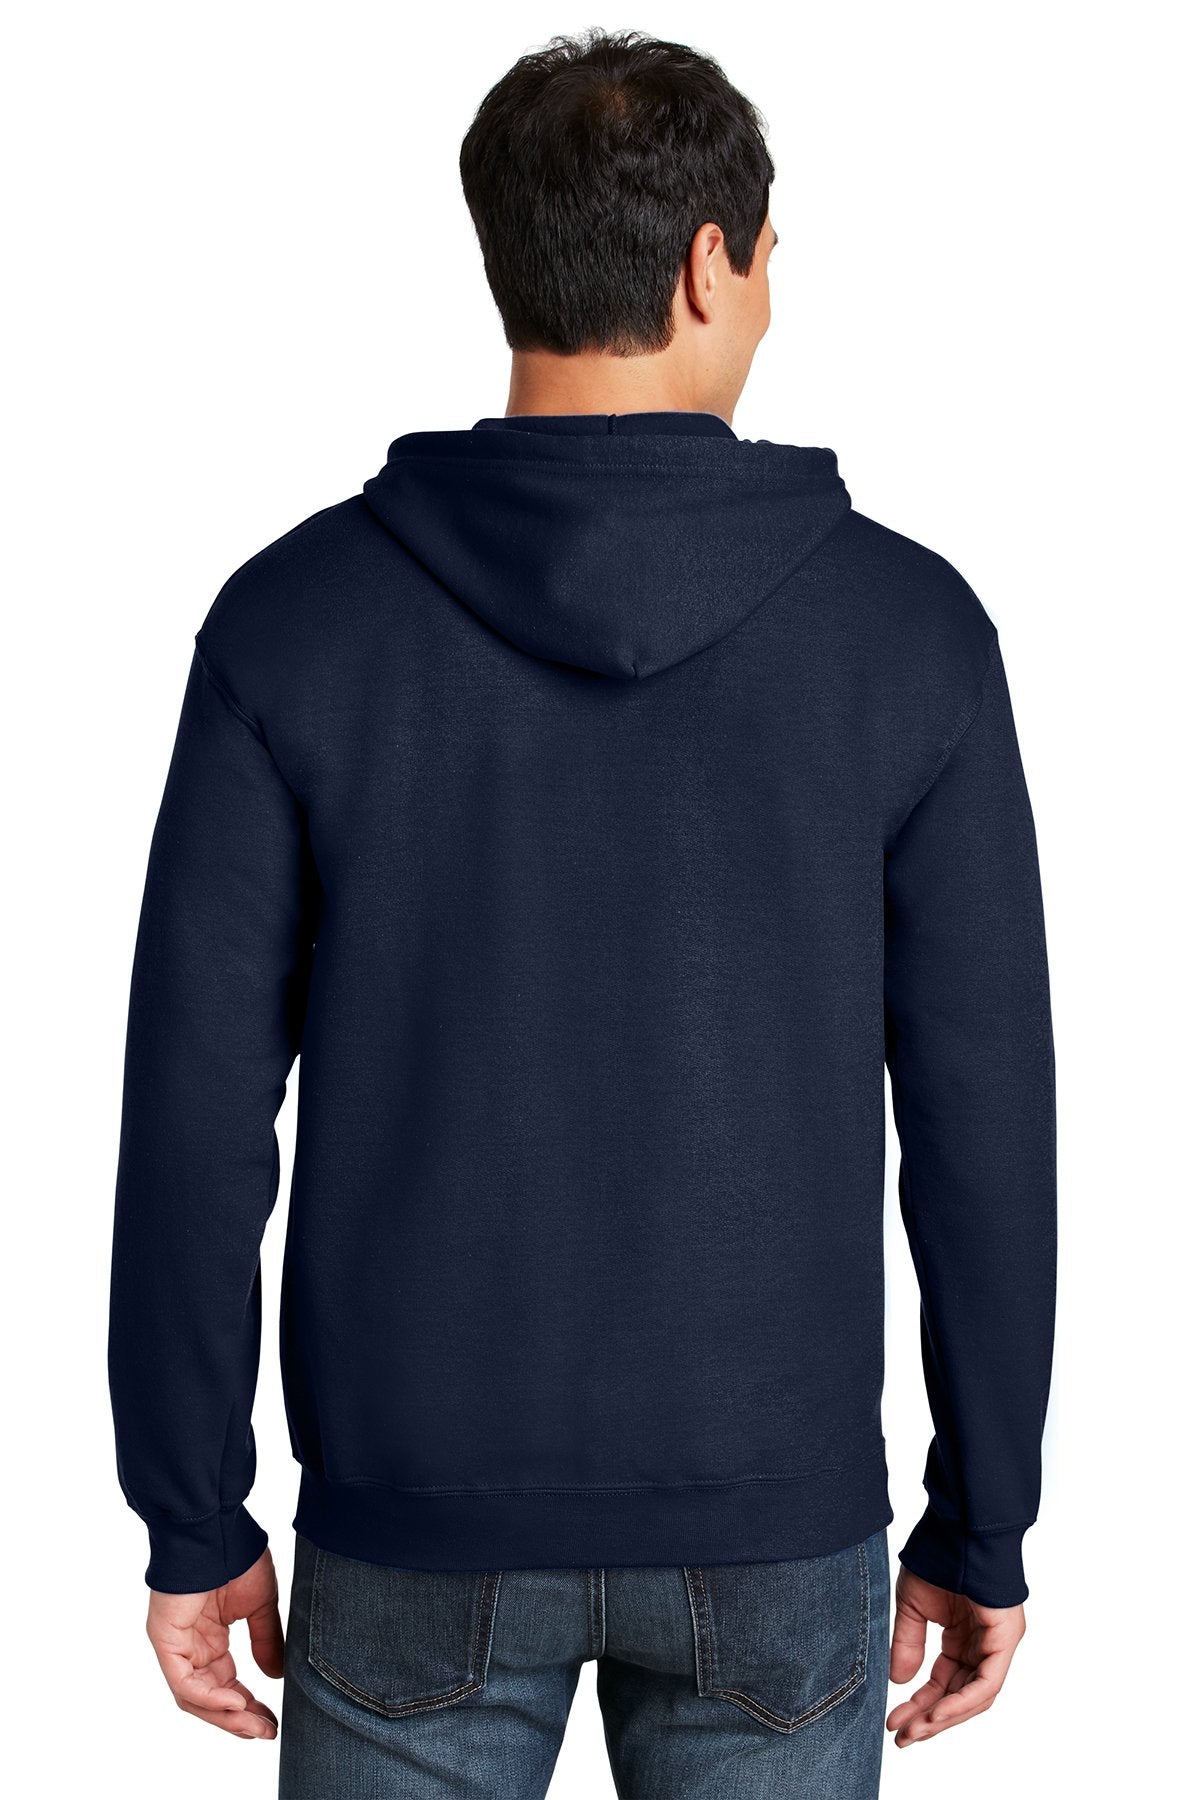 Gildan Heavy Blend Full Zip Hooded Sweatshirt Navy